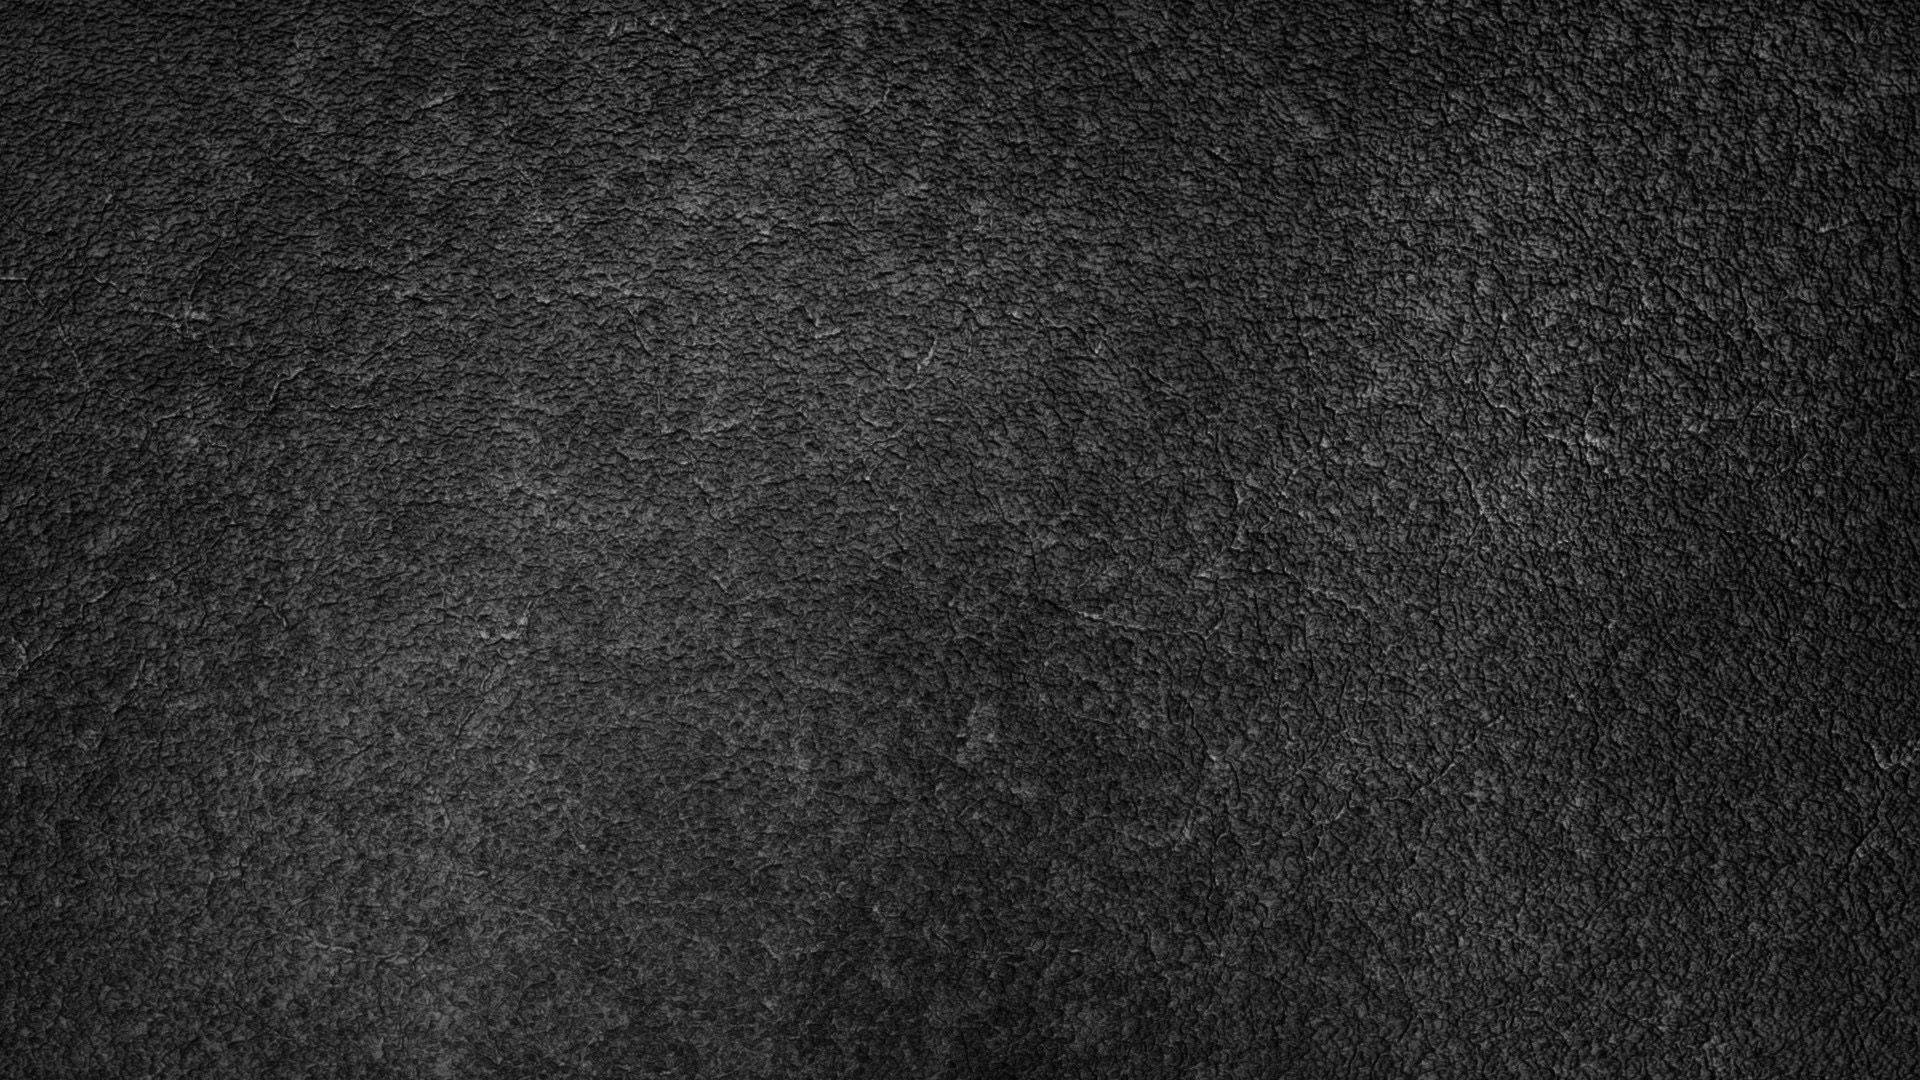 Asphalt Texture In Dark Gray Concrete